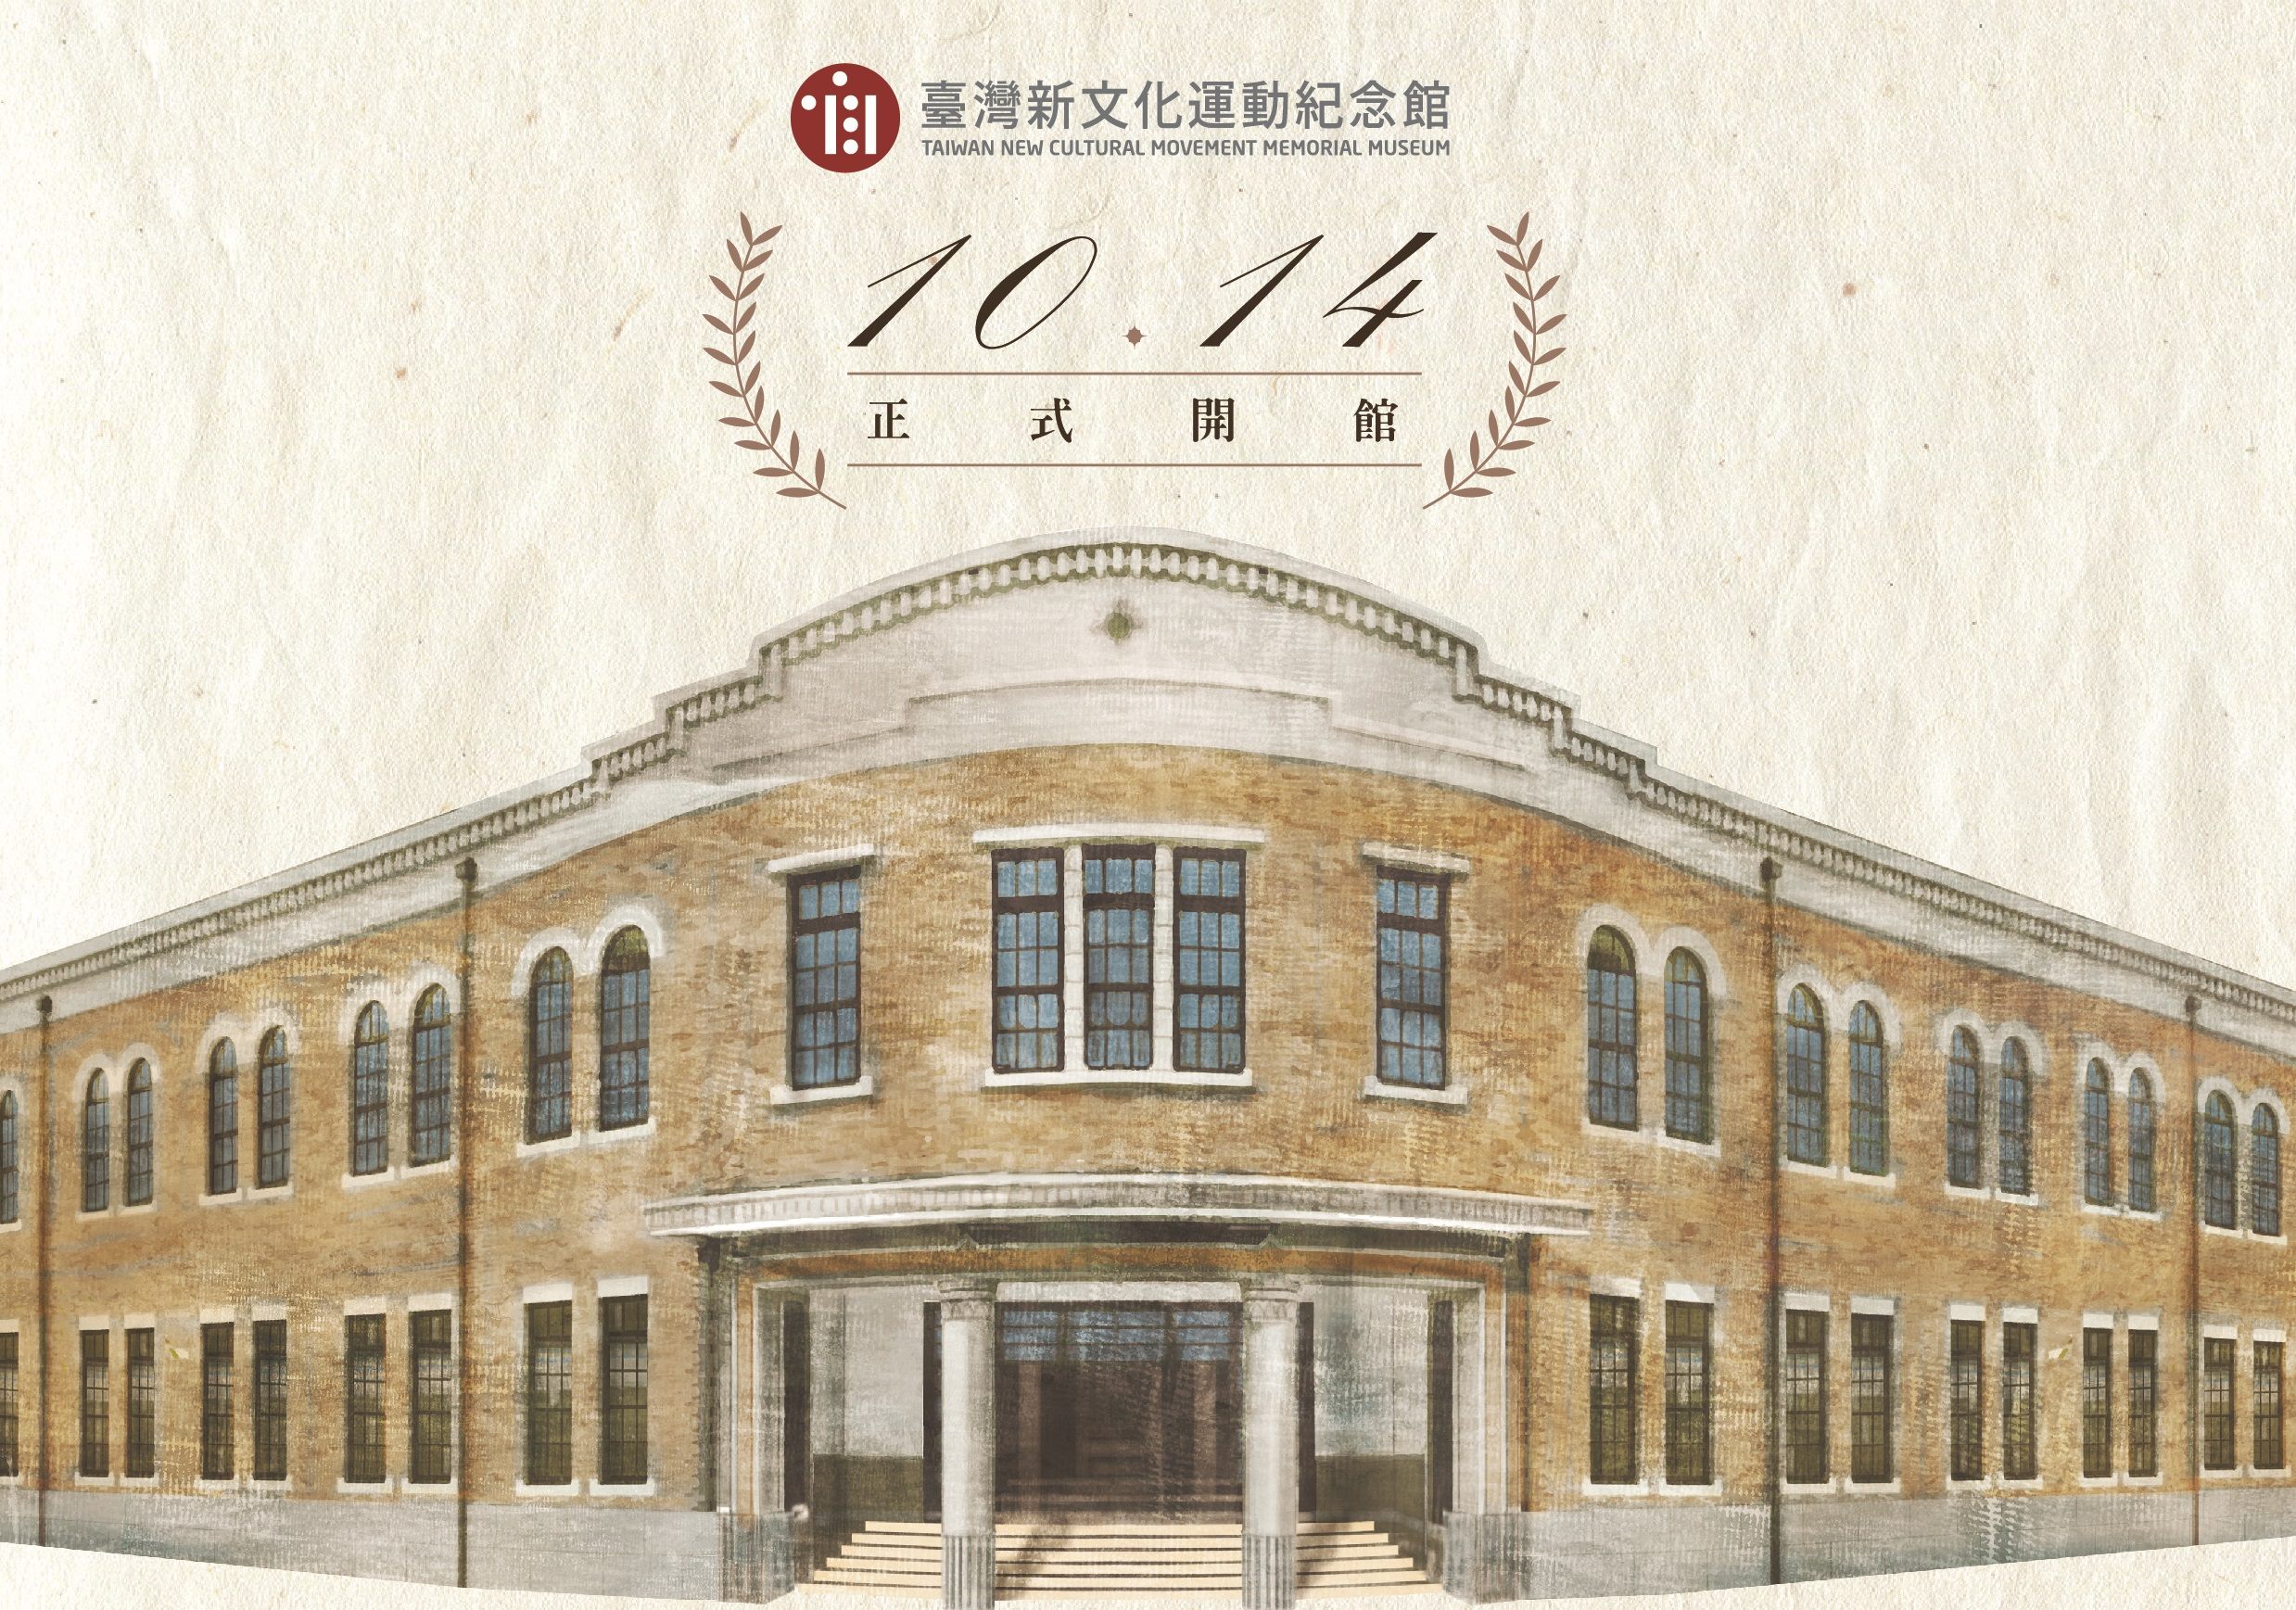 臺灣新文化運動紀念館正式開館營運